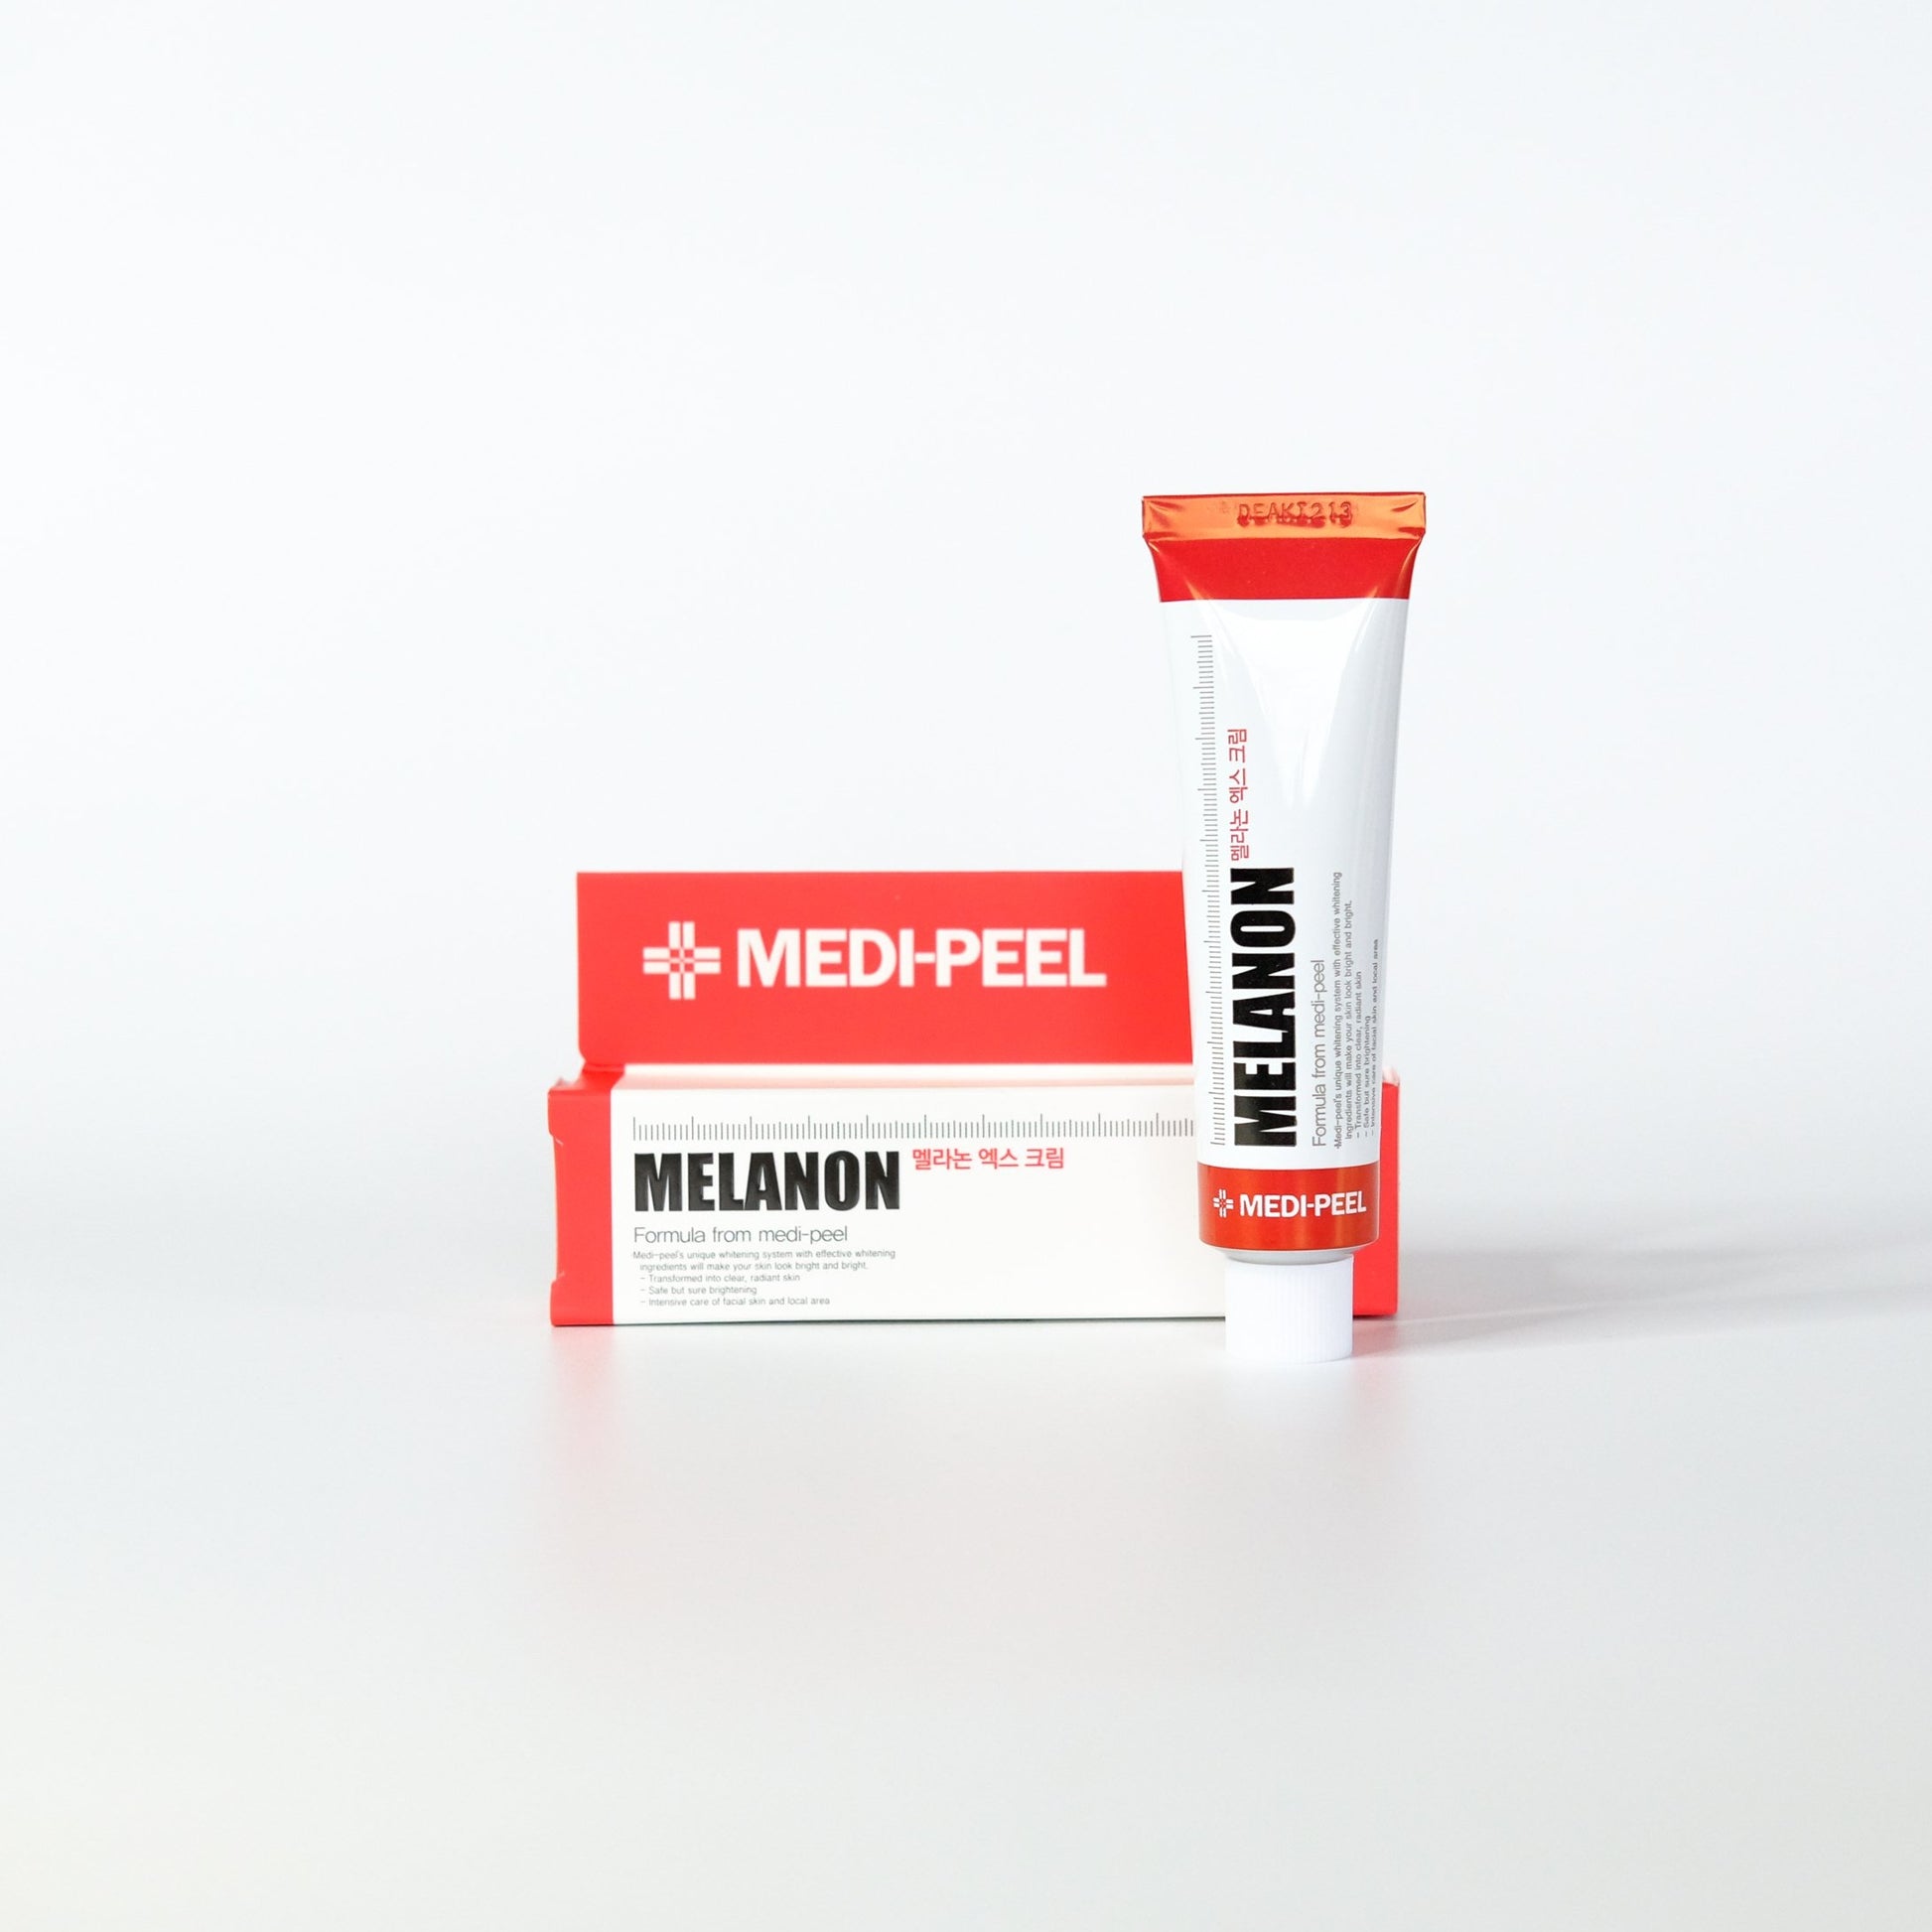 medipeel-melanon-cream